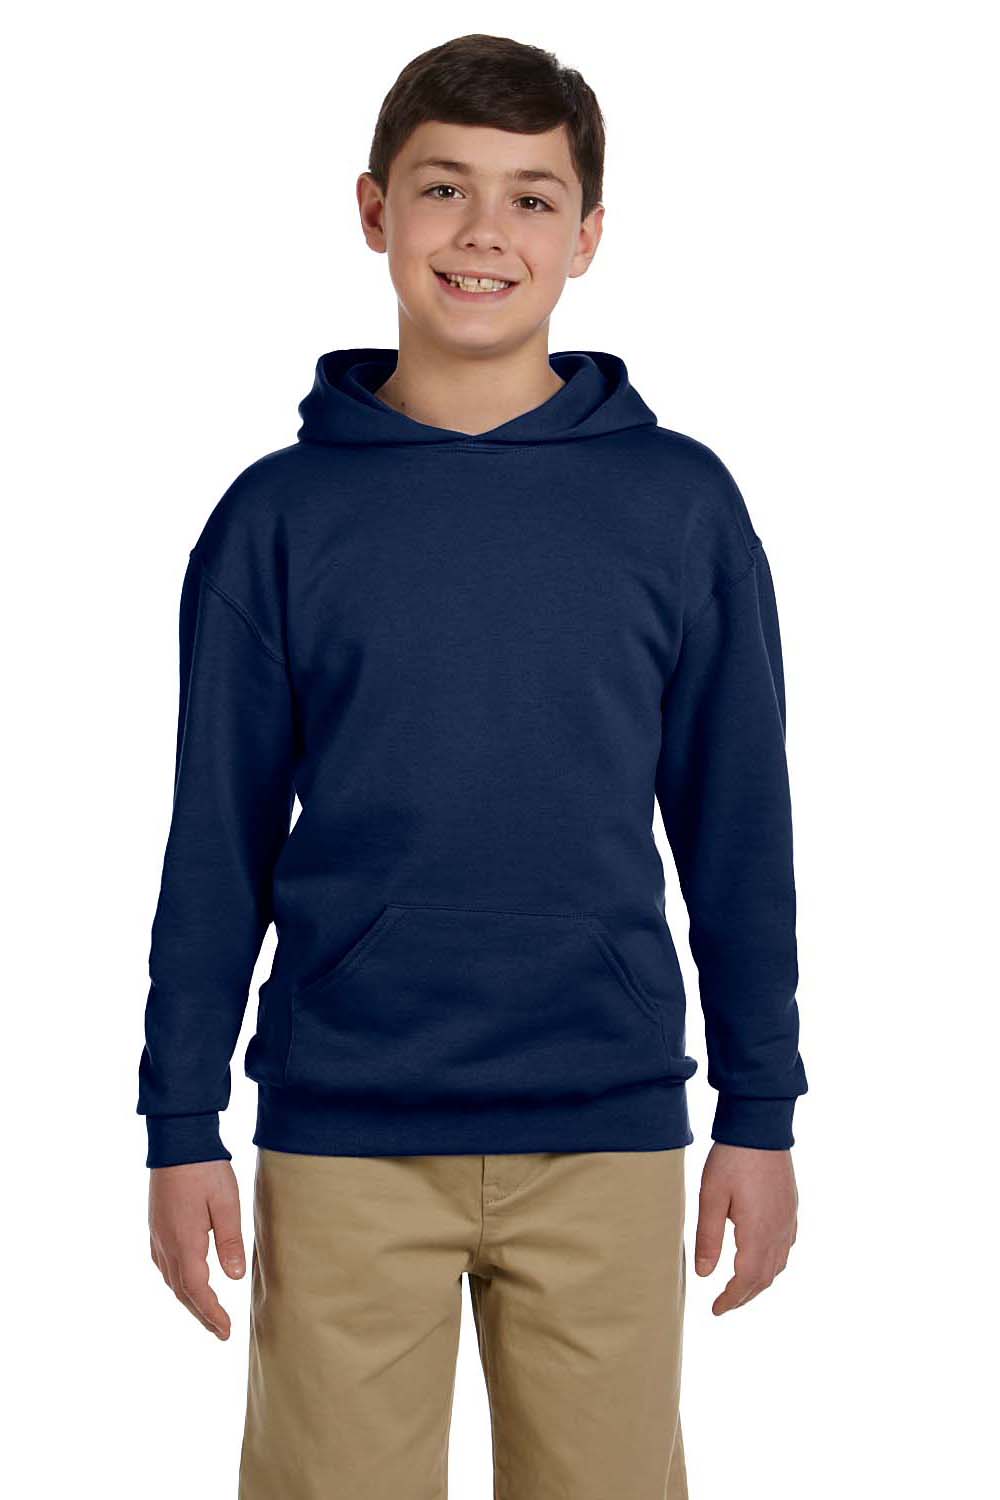 Jerzees 996Y Youth NuBlend Fleece Hooded Sweatshirt Hoodie Navy Blue Front